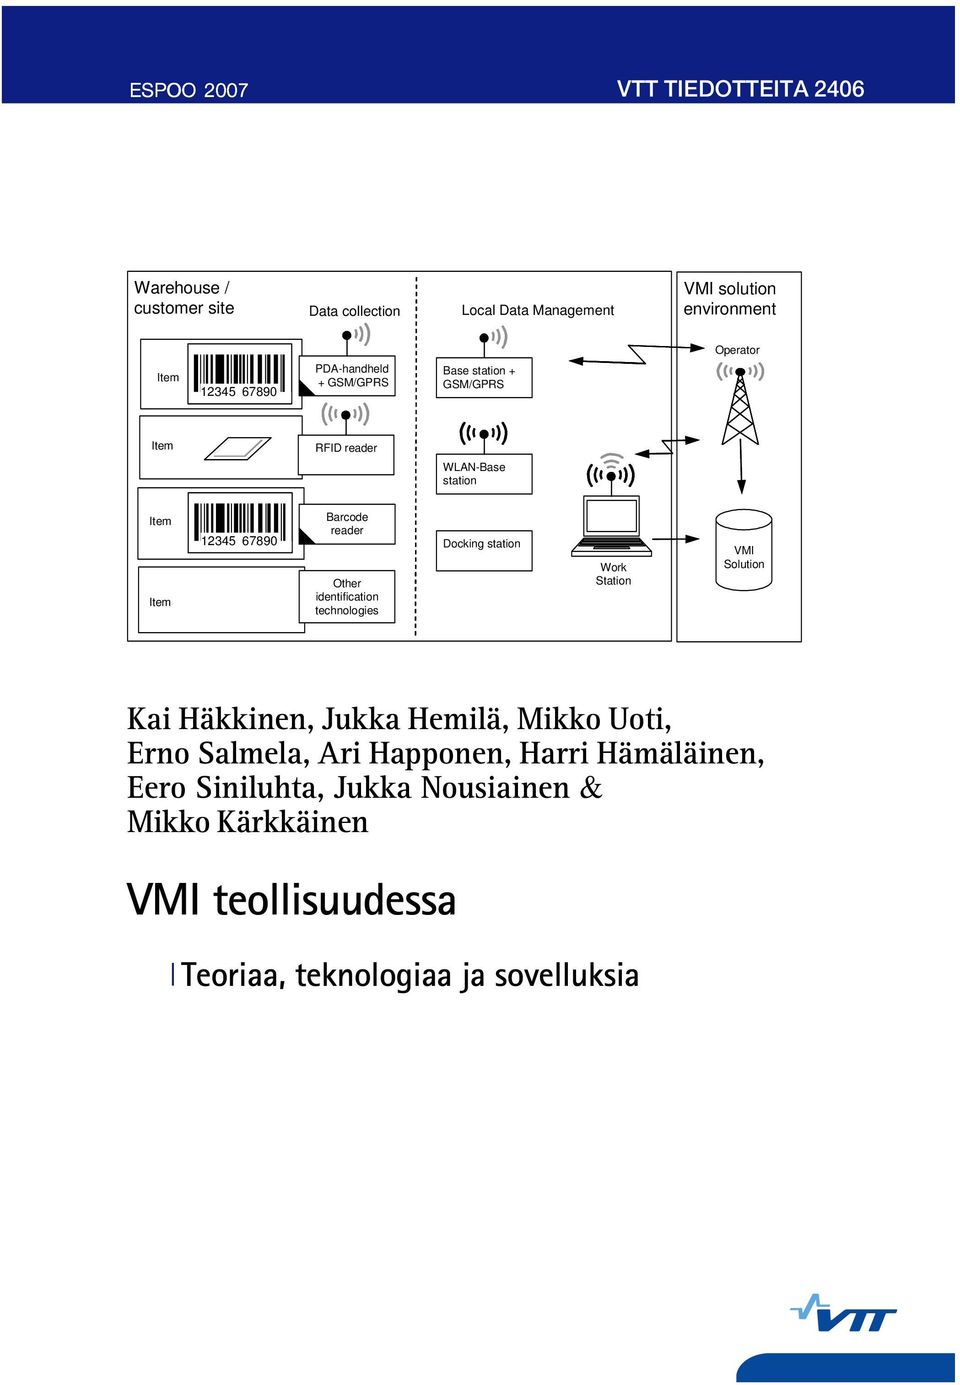 reader Other identification technologies Docking station Work Station VMI Solution Kai Häkkinen, Jukka Hemilä, Mikko Uoti, Erno